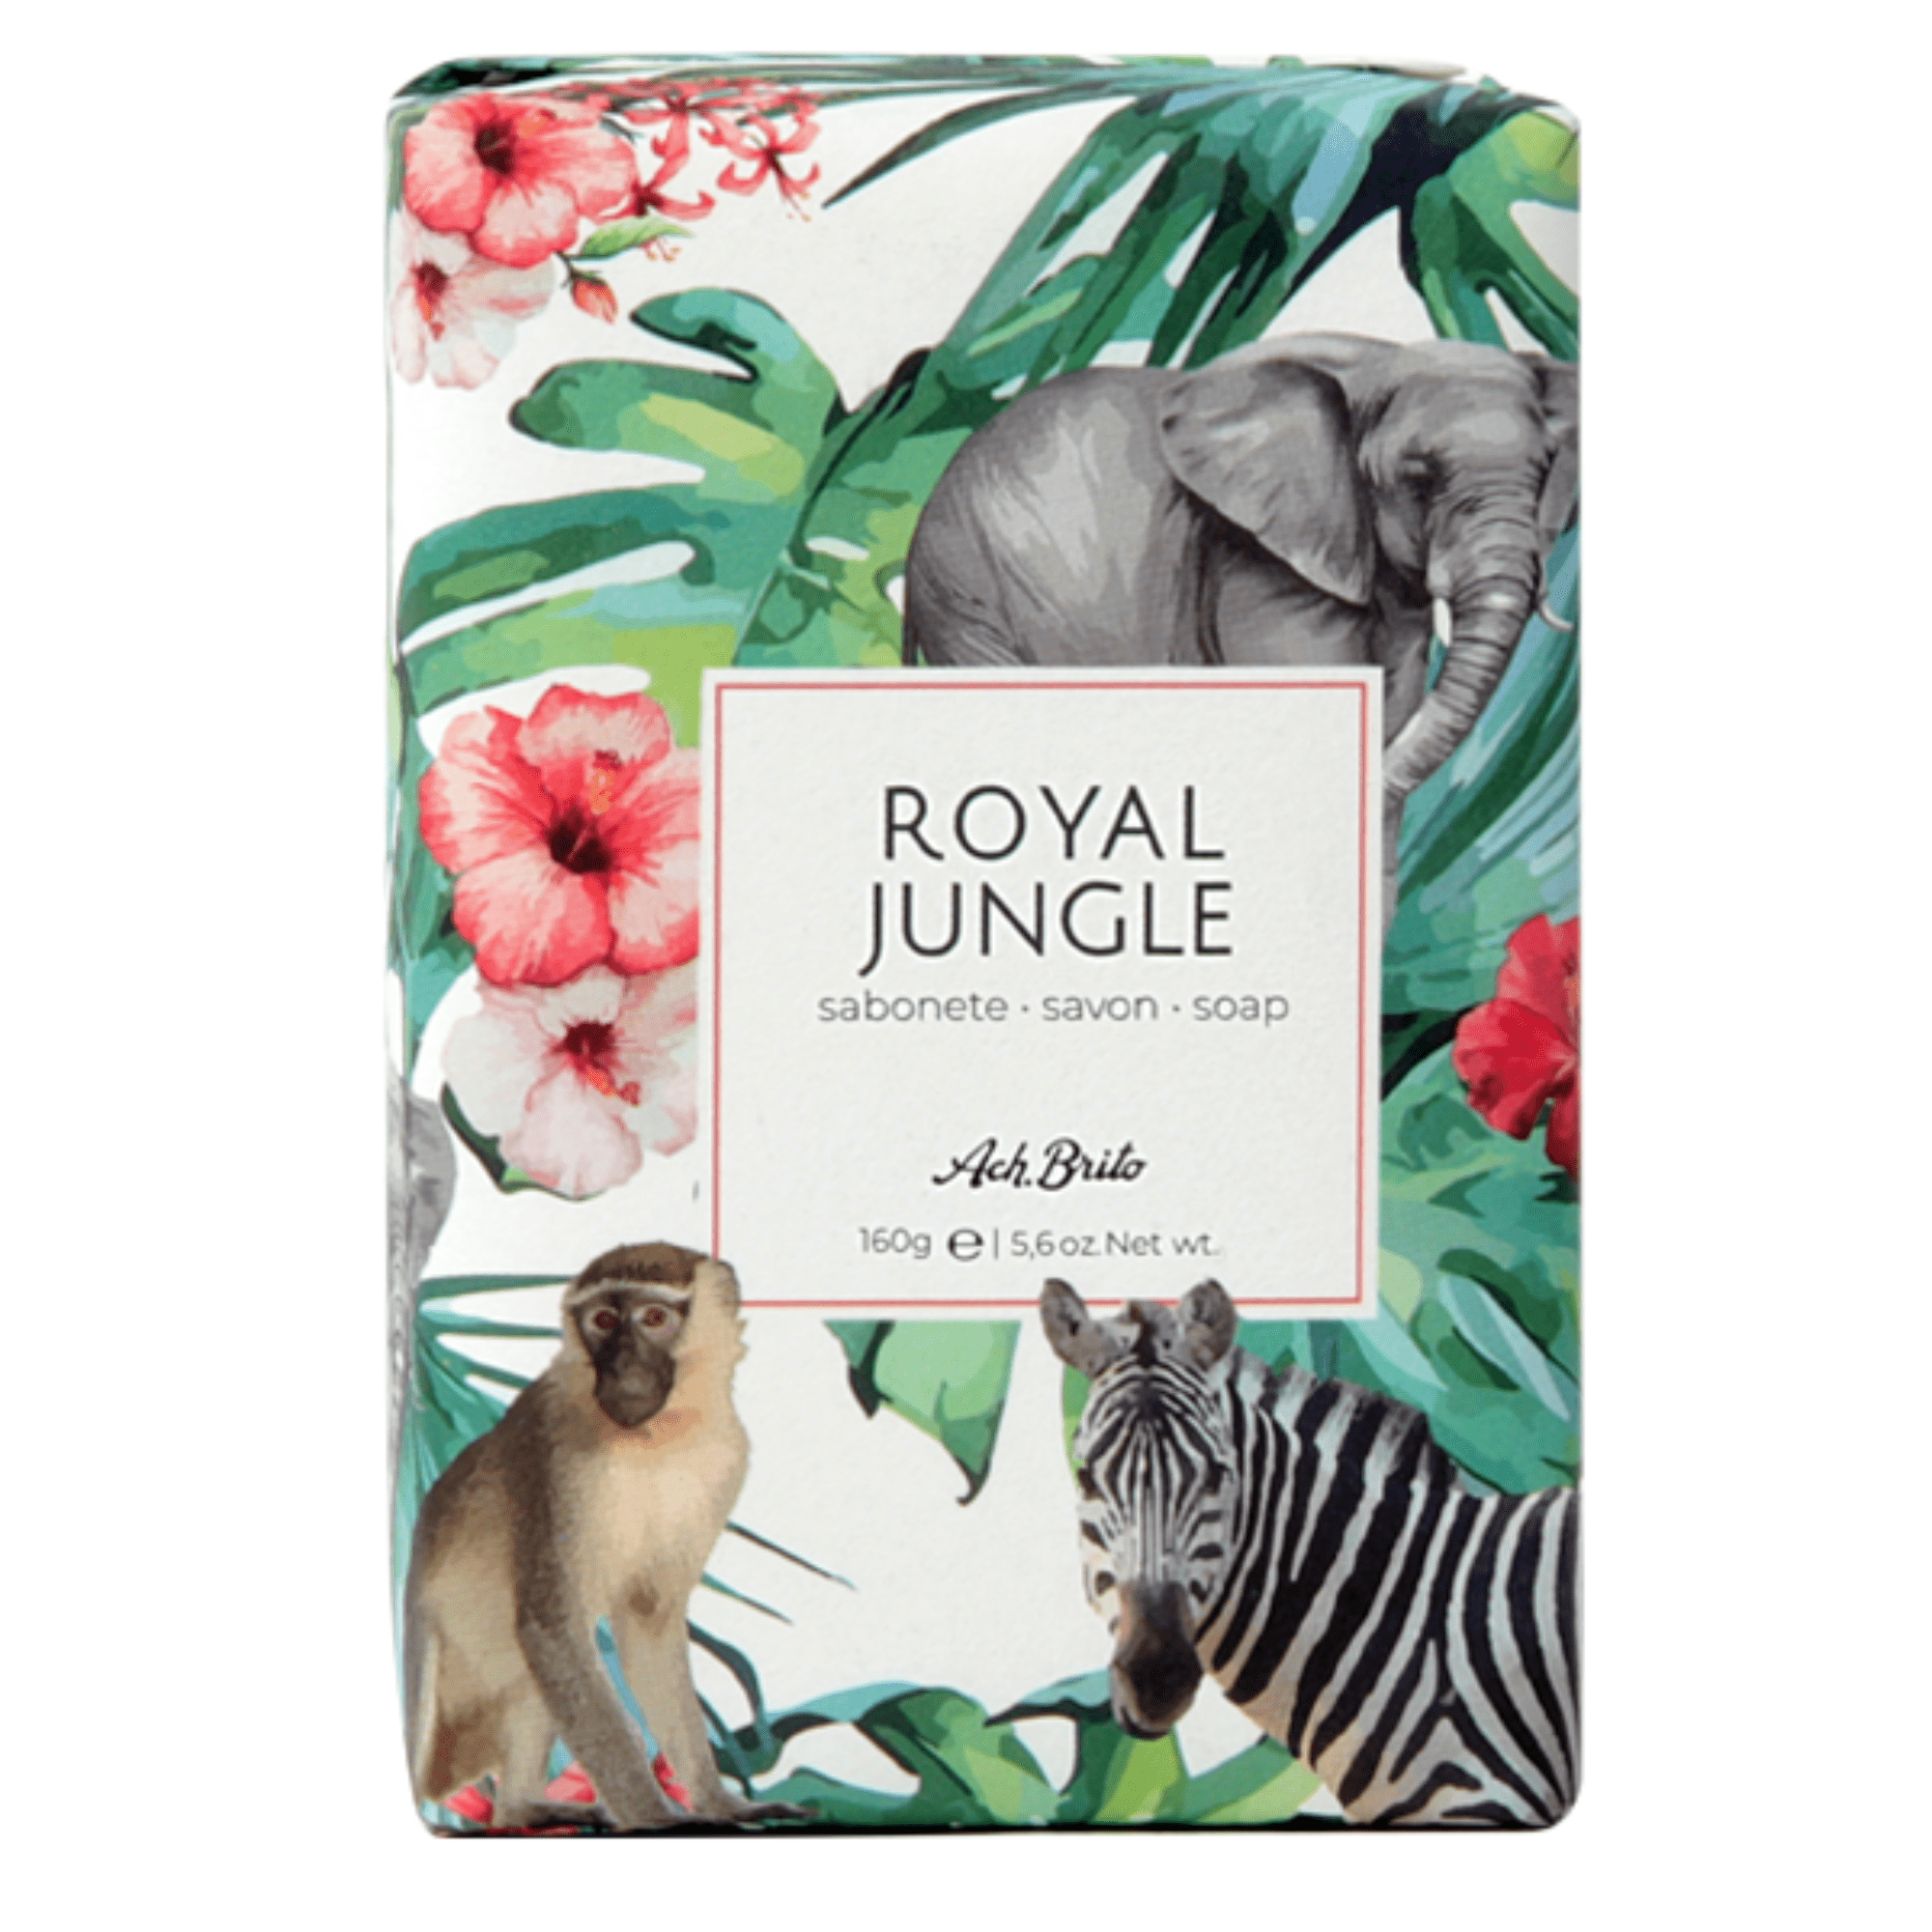 Ach Brito Royal Jungle Soap (160 g) #10086261 photo